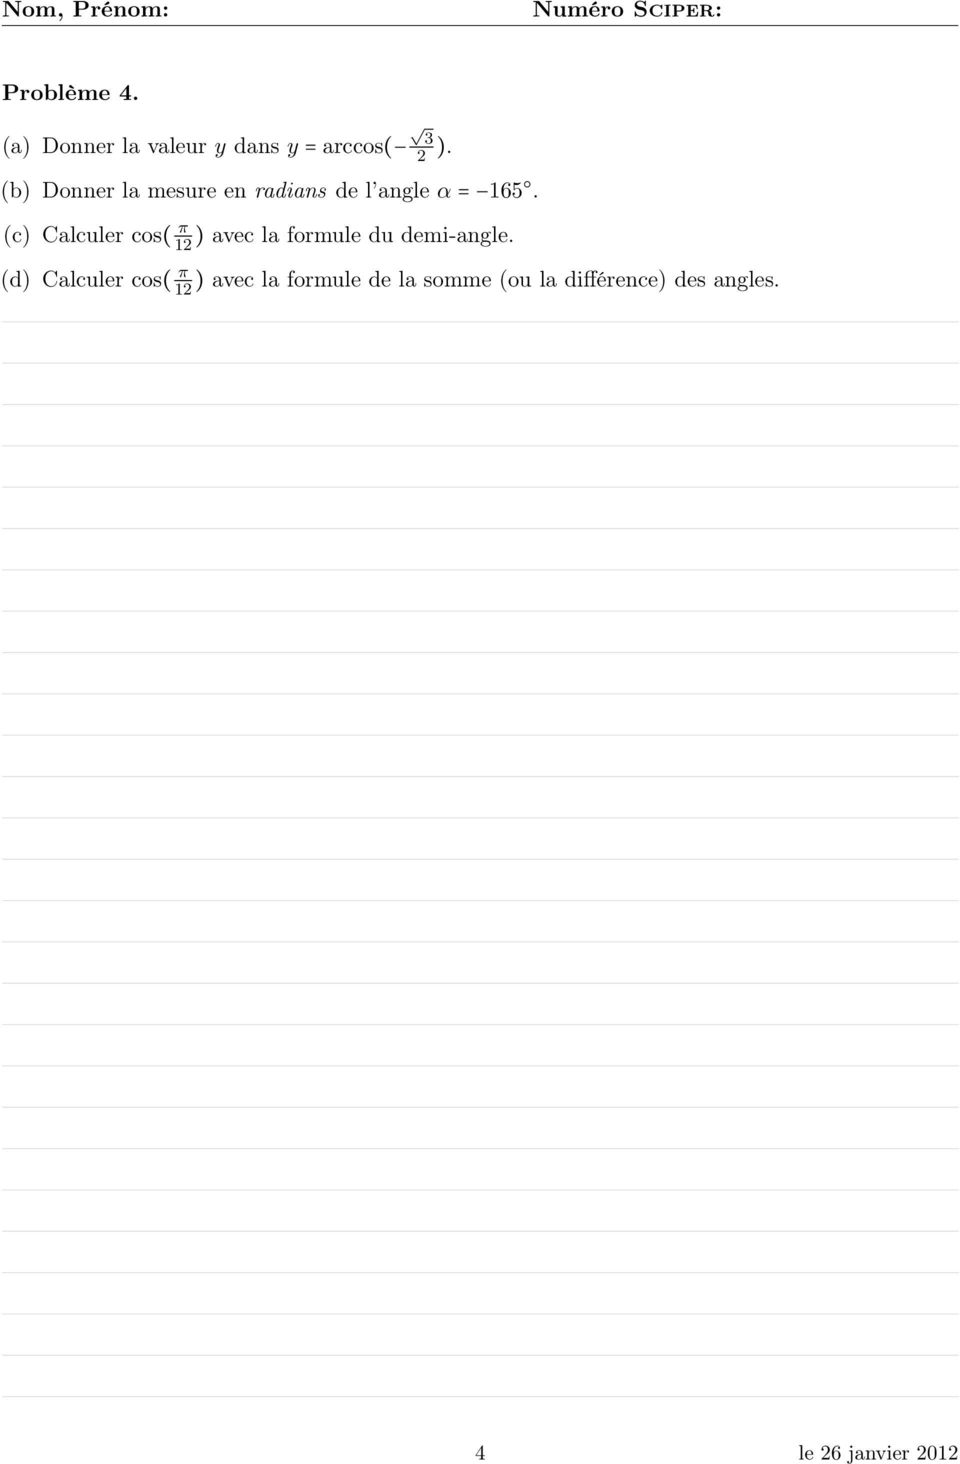 (c) Calculer cos( π 12 ) avec la formule du demi-angle.